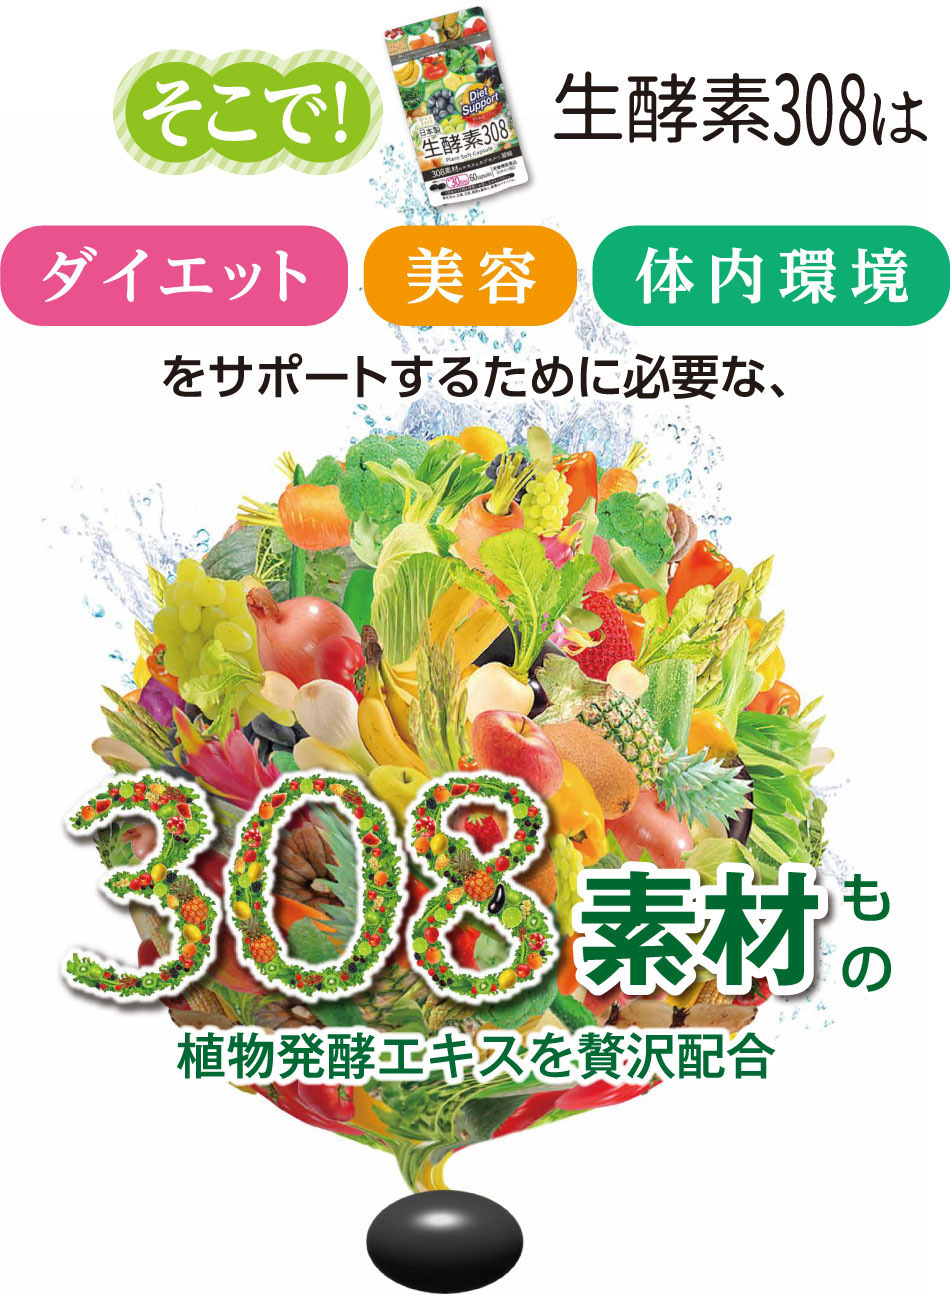 そこで！生酵素308はダイエット、美容、体内環境をサポートするために必要な、308素材もの植物発酵エキスを贅沢配合。